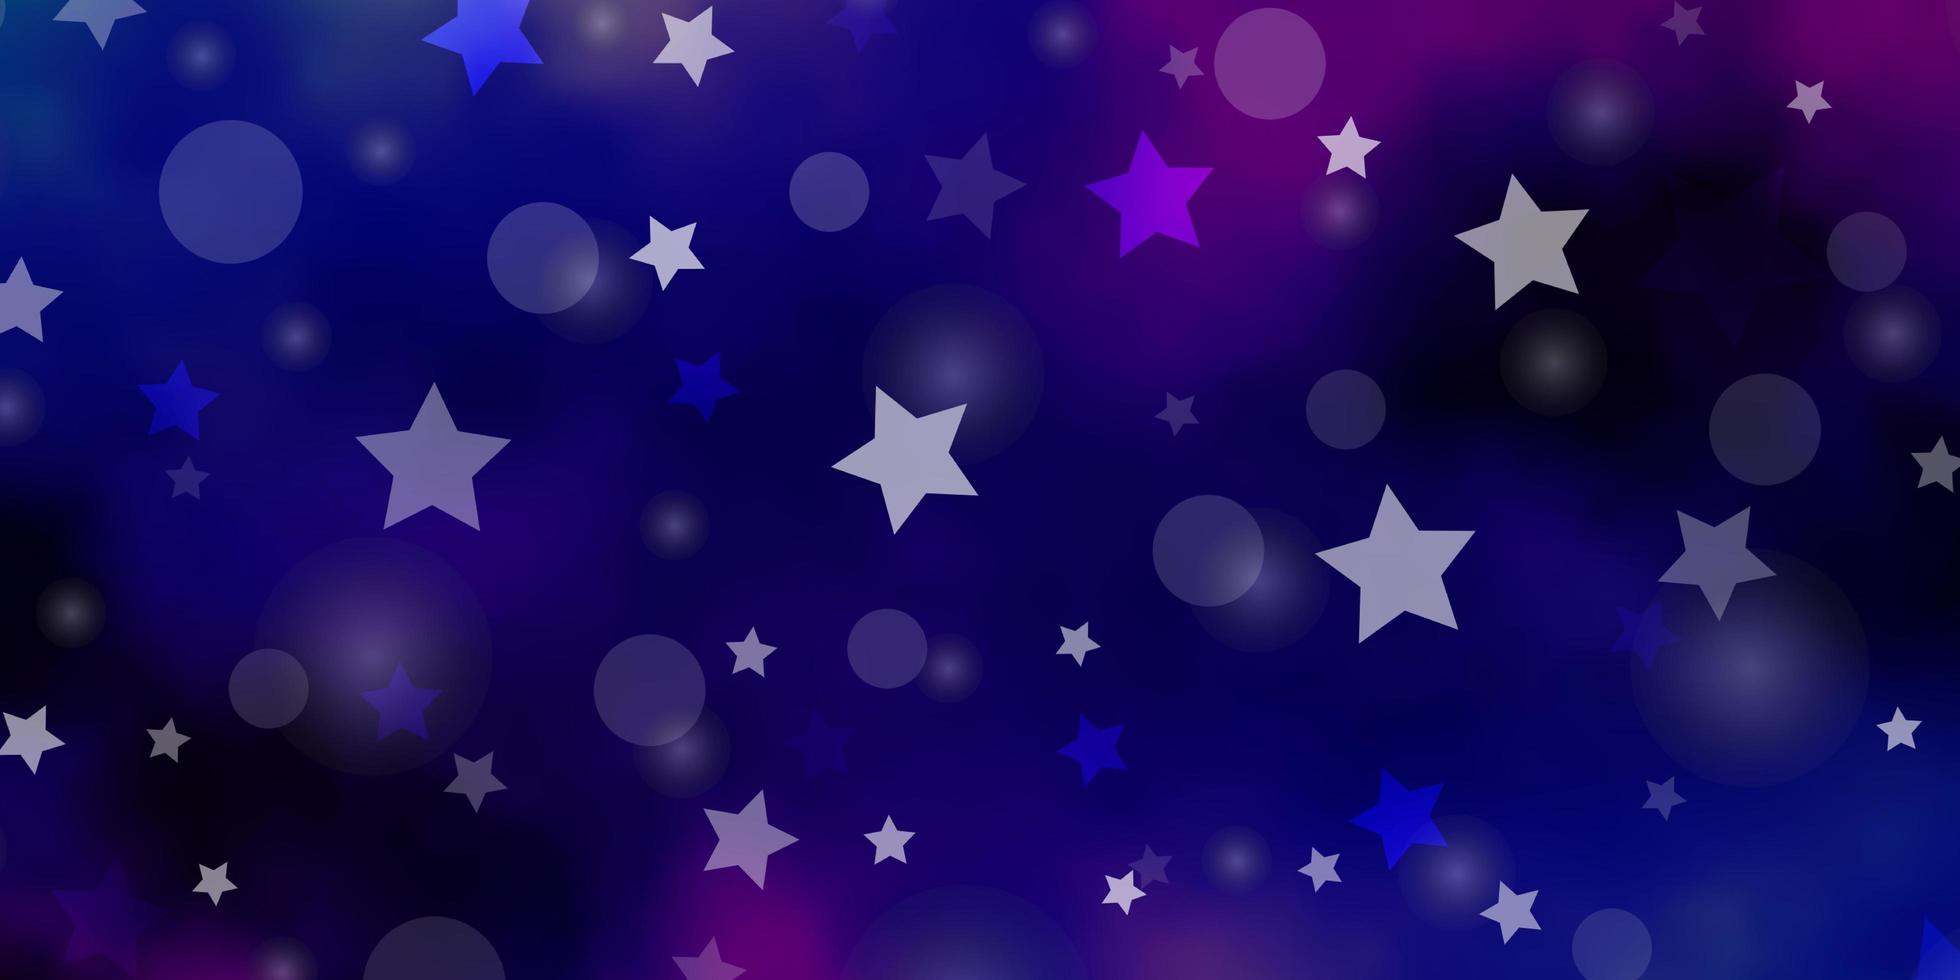 mörkrosa blå vektor bakgrund med cirklar stjärnor abstrakt design i lutningsstil med bubblor stjärnor design för tapet tyg tillverkare